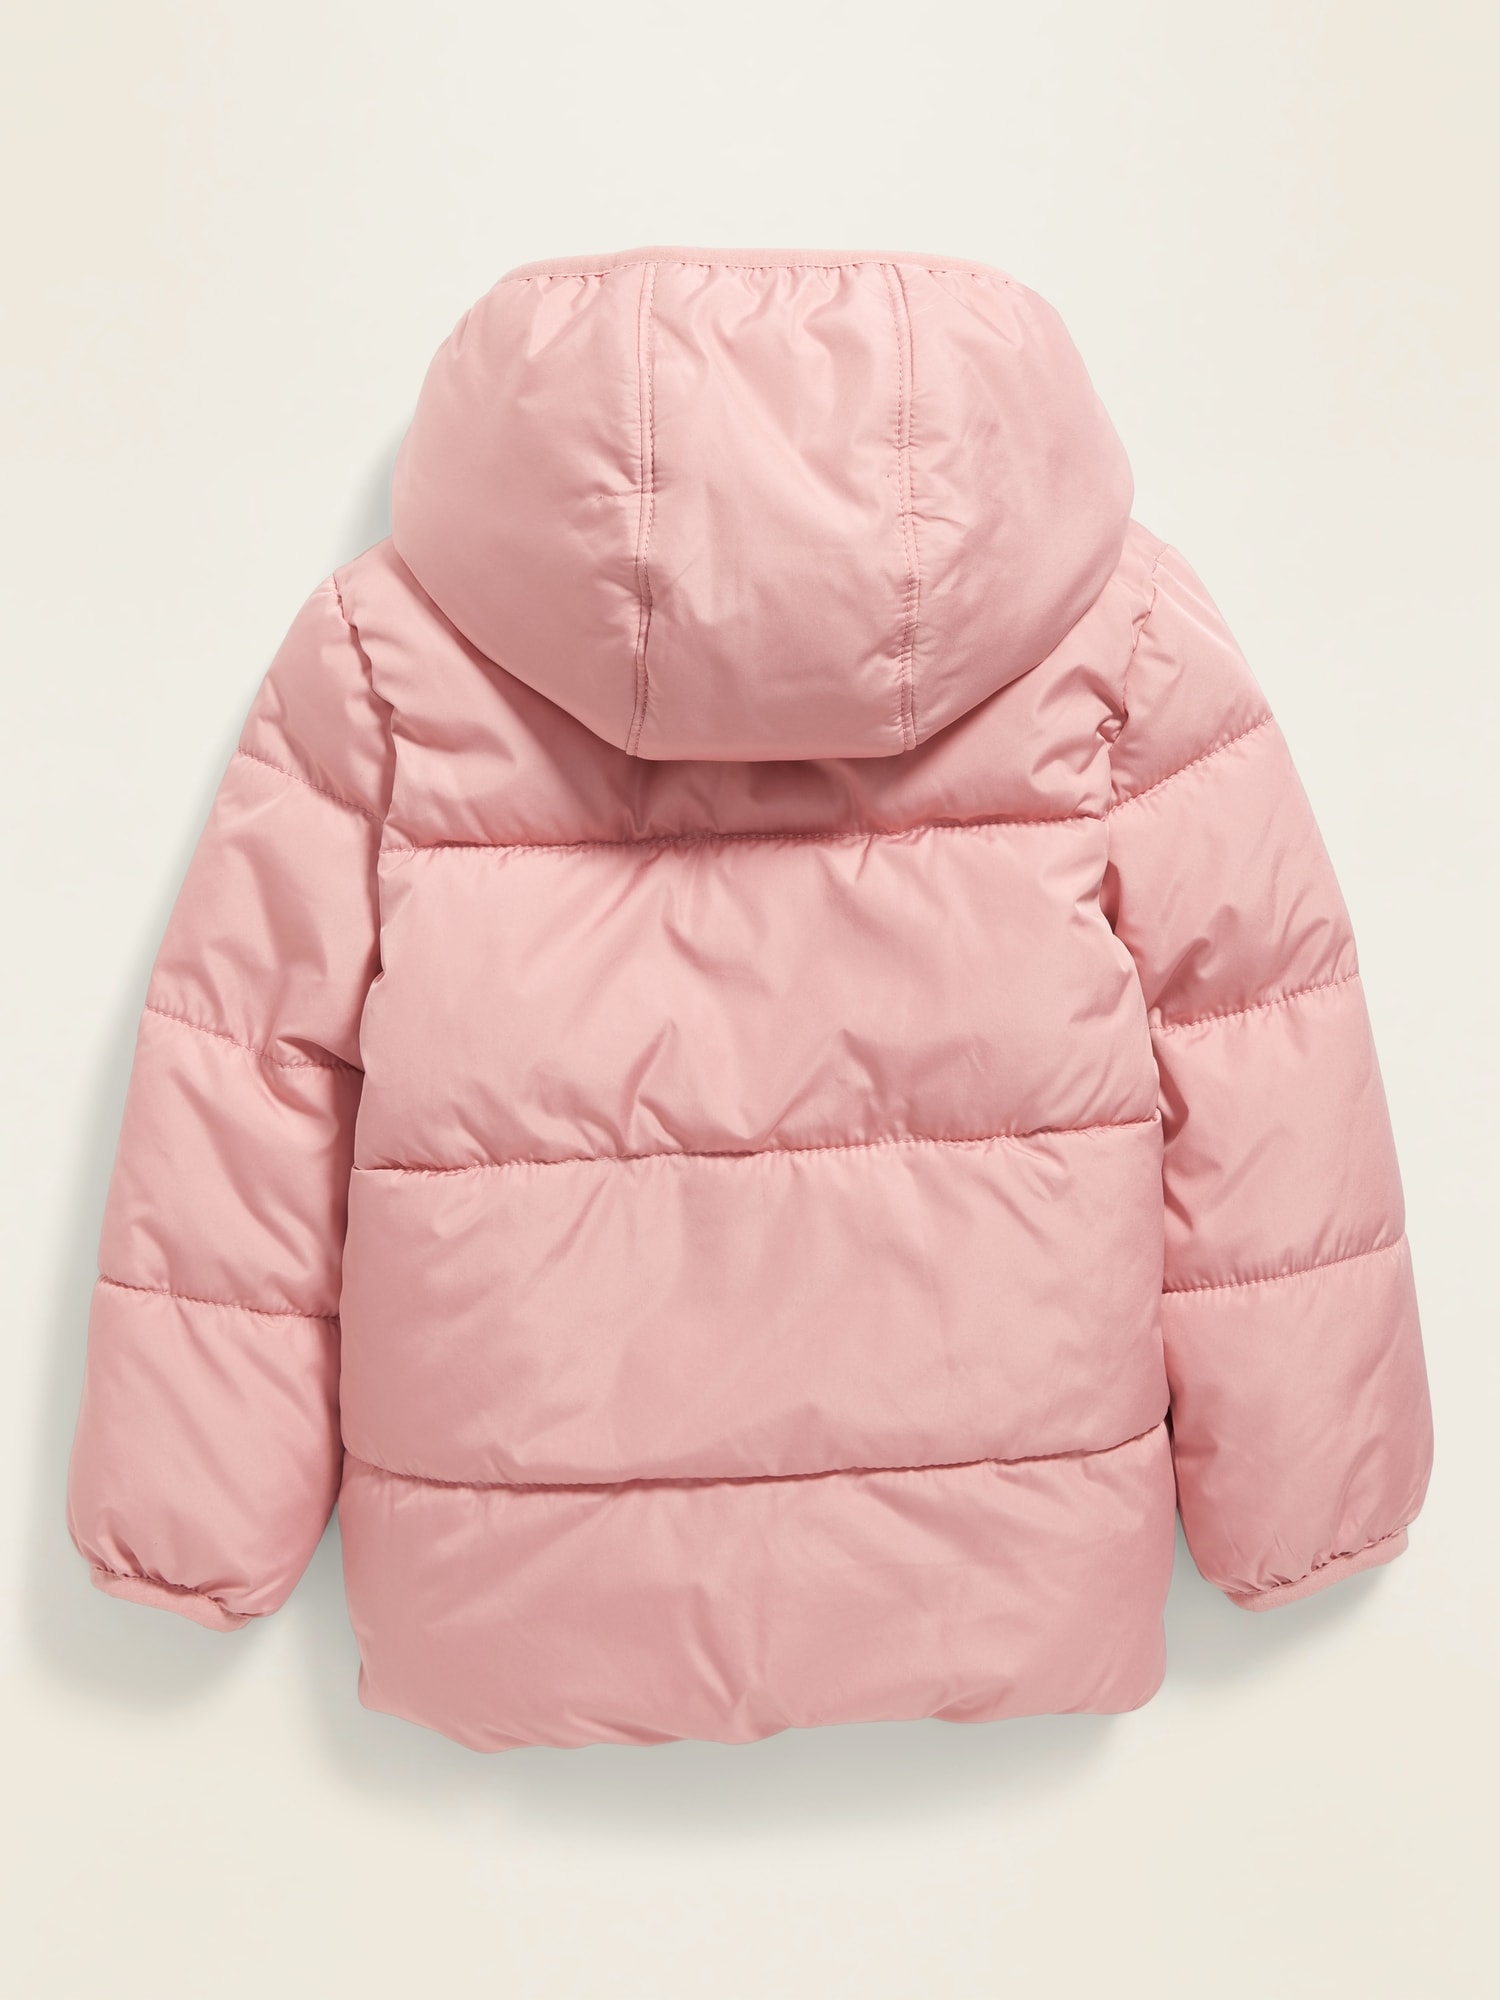 gap puffer jacket toddler